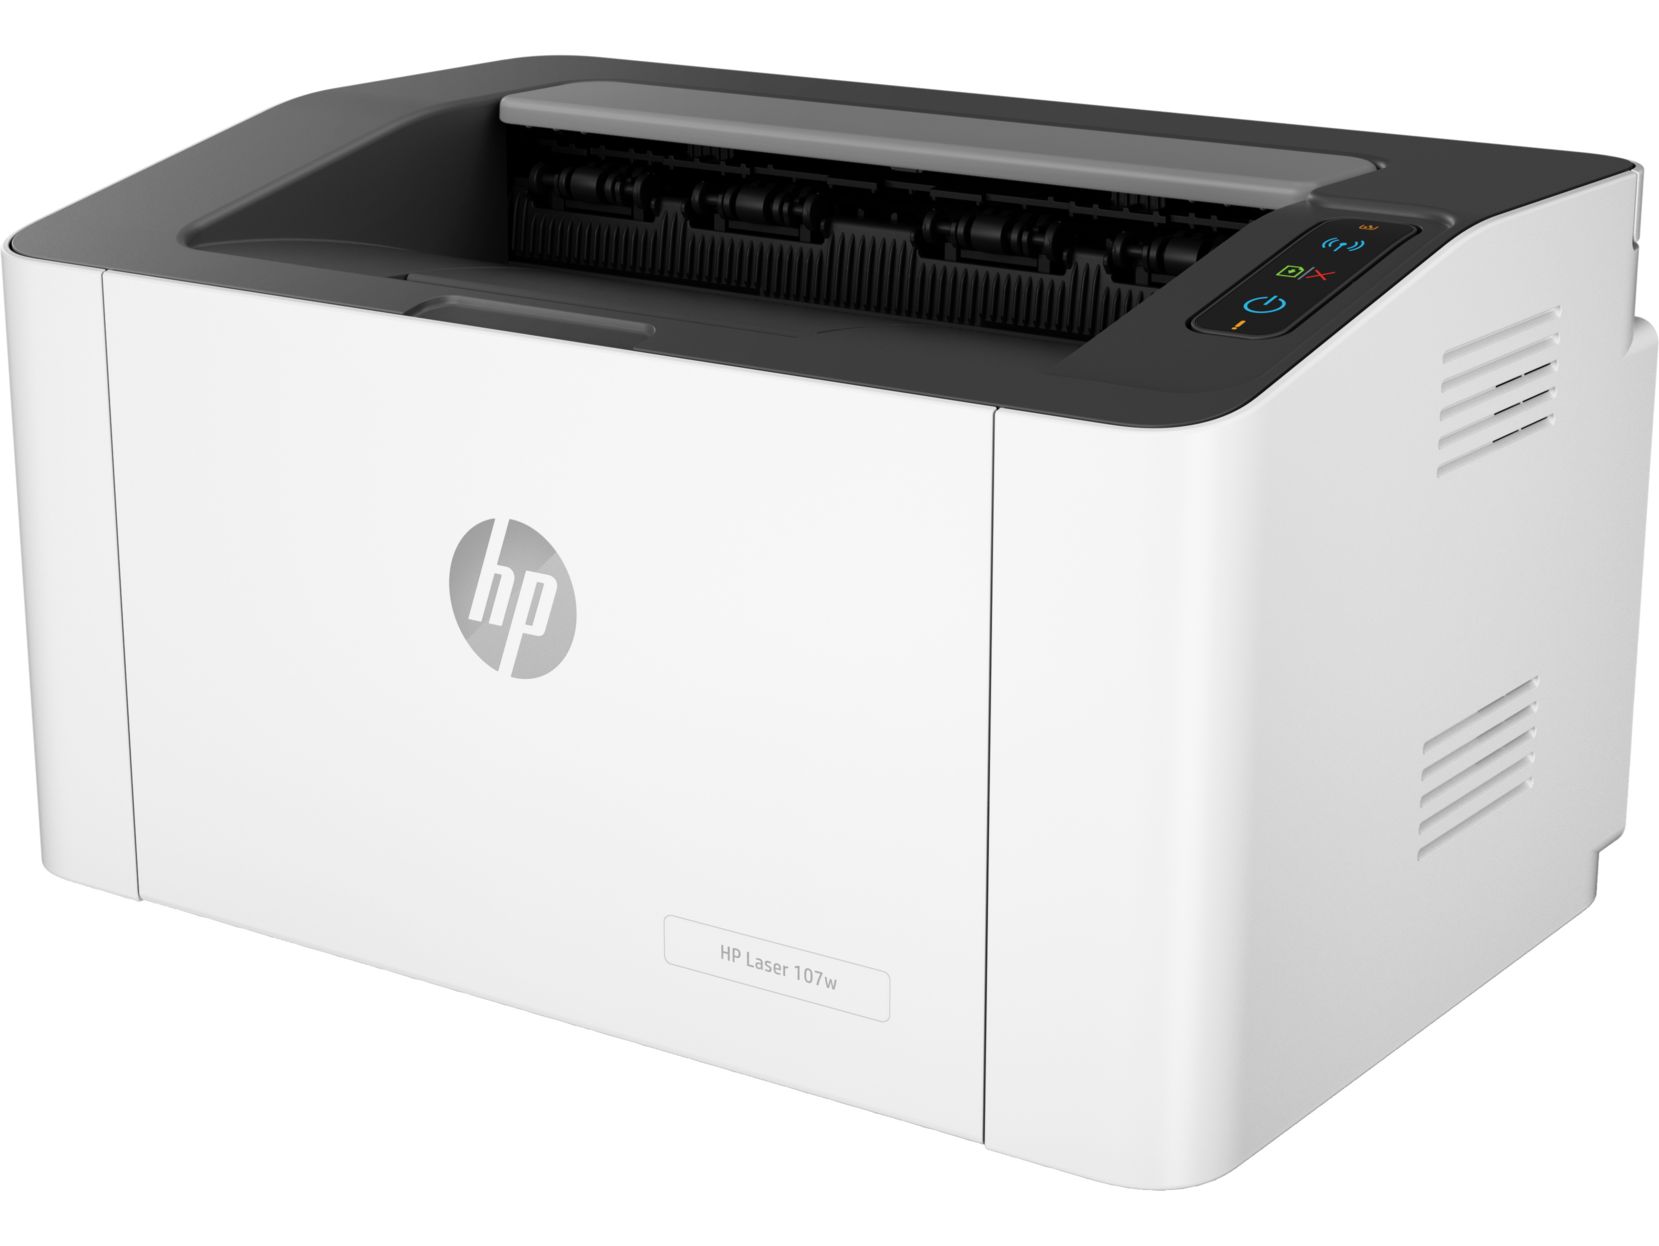 Принтер HP Laser 107w цена и фото